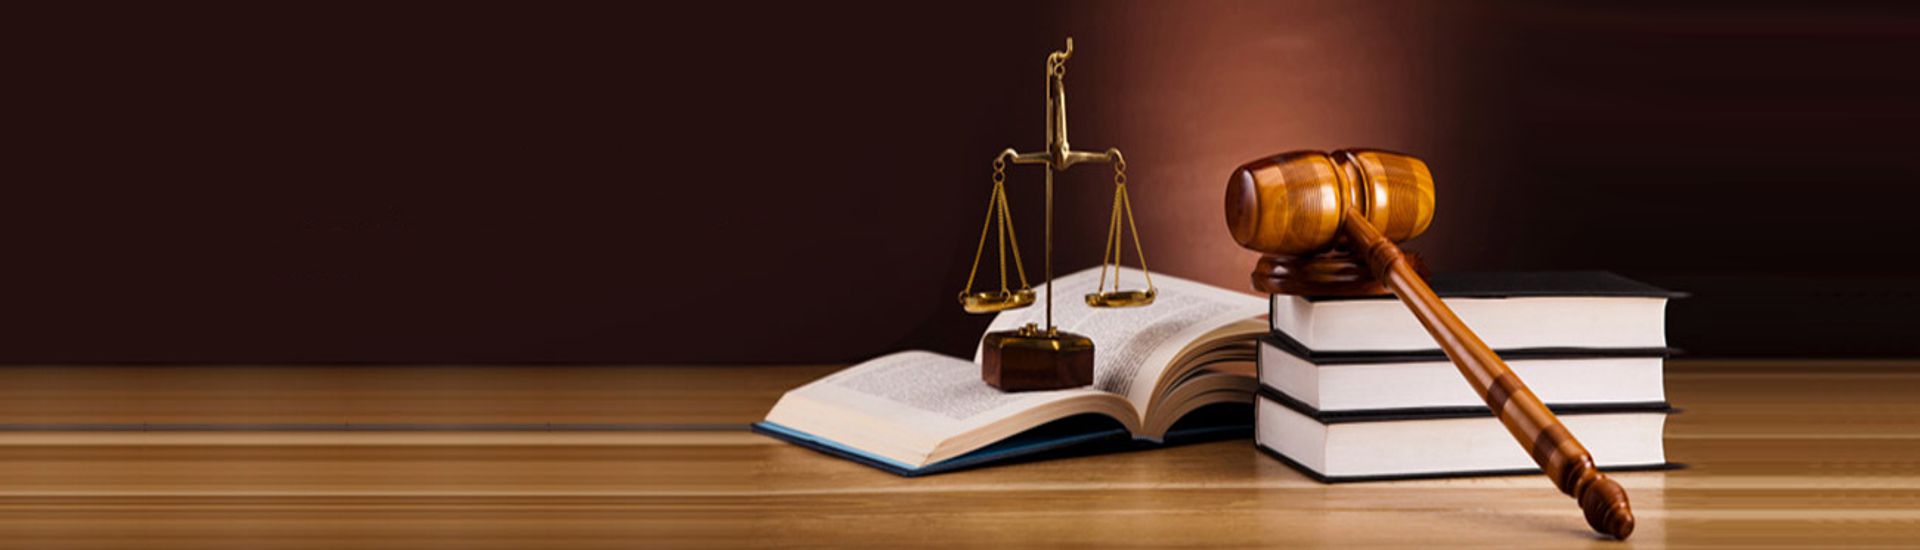 Caliendo Advogados - Advocacia Trabalhista